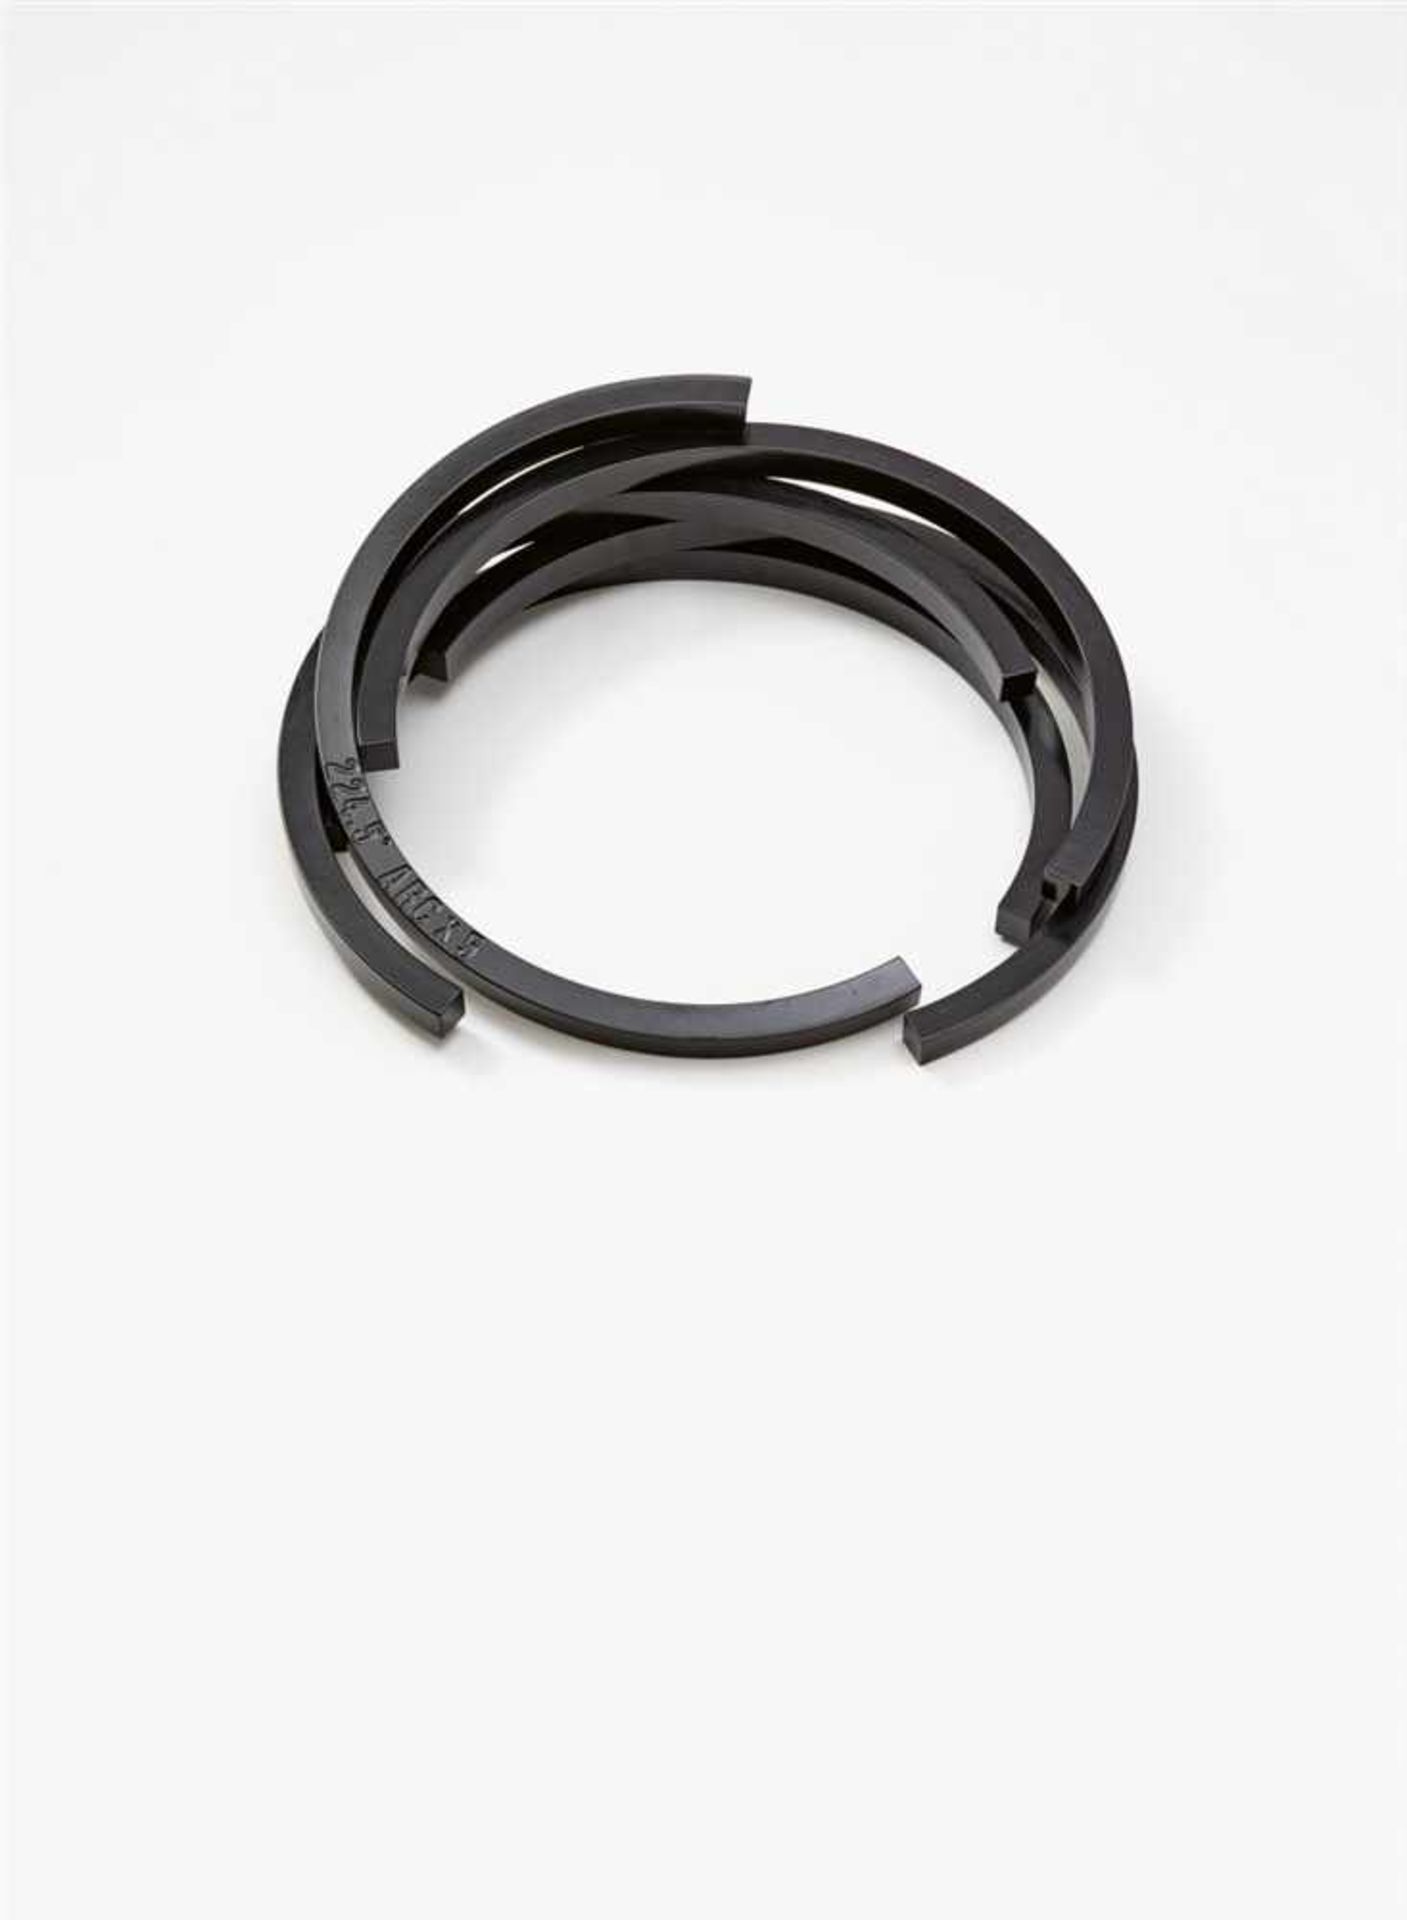 Bernar Venet224,5° Arc x 5 Aluminium, schwarz gefasst. 13 x 57 x 54 cm. Gestempelt betitelt. Auf der